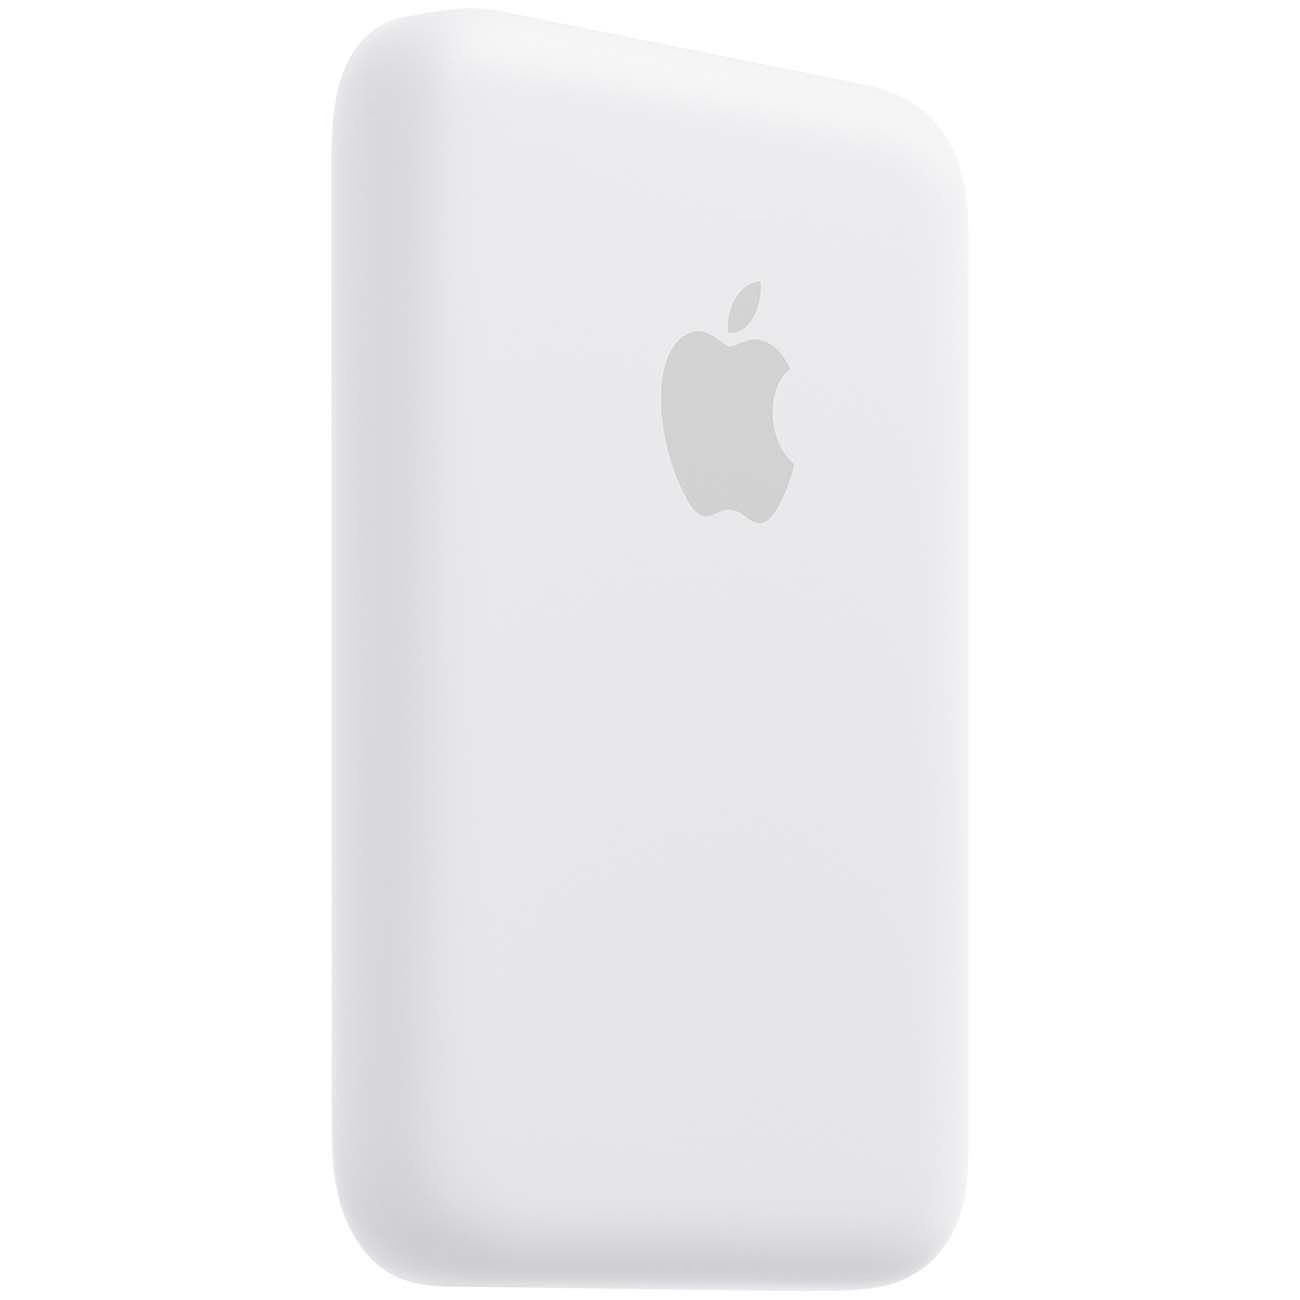 Портативный аккумулятор Apple MagSafe Battery Pack, белый